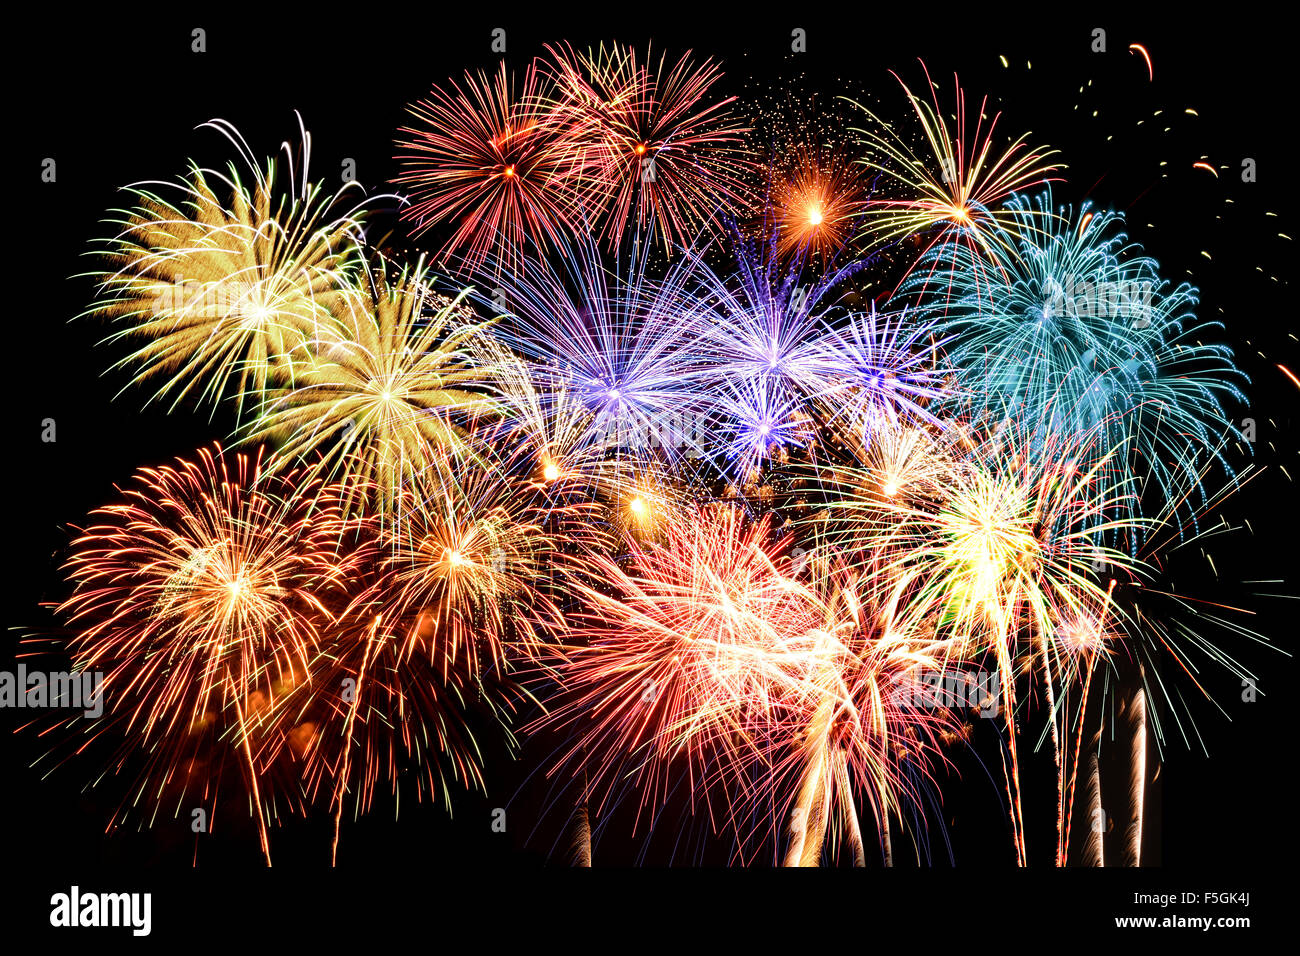 Großes Finale mit Feuerwerk in verschiedenen Farben vor einem dunklen Hintergrund Stockfoto